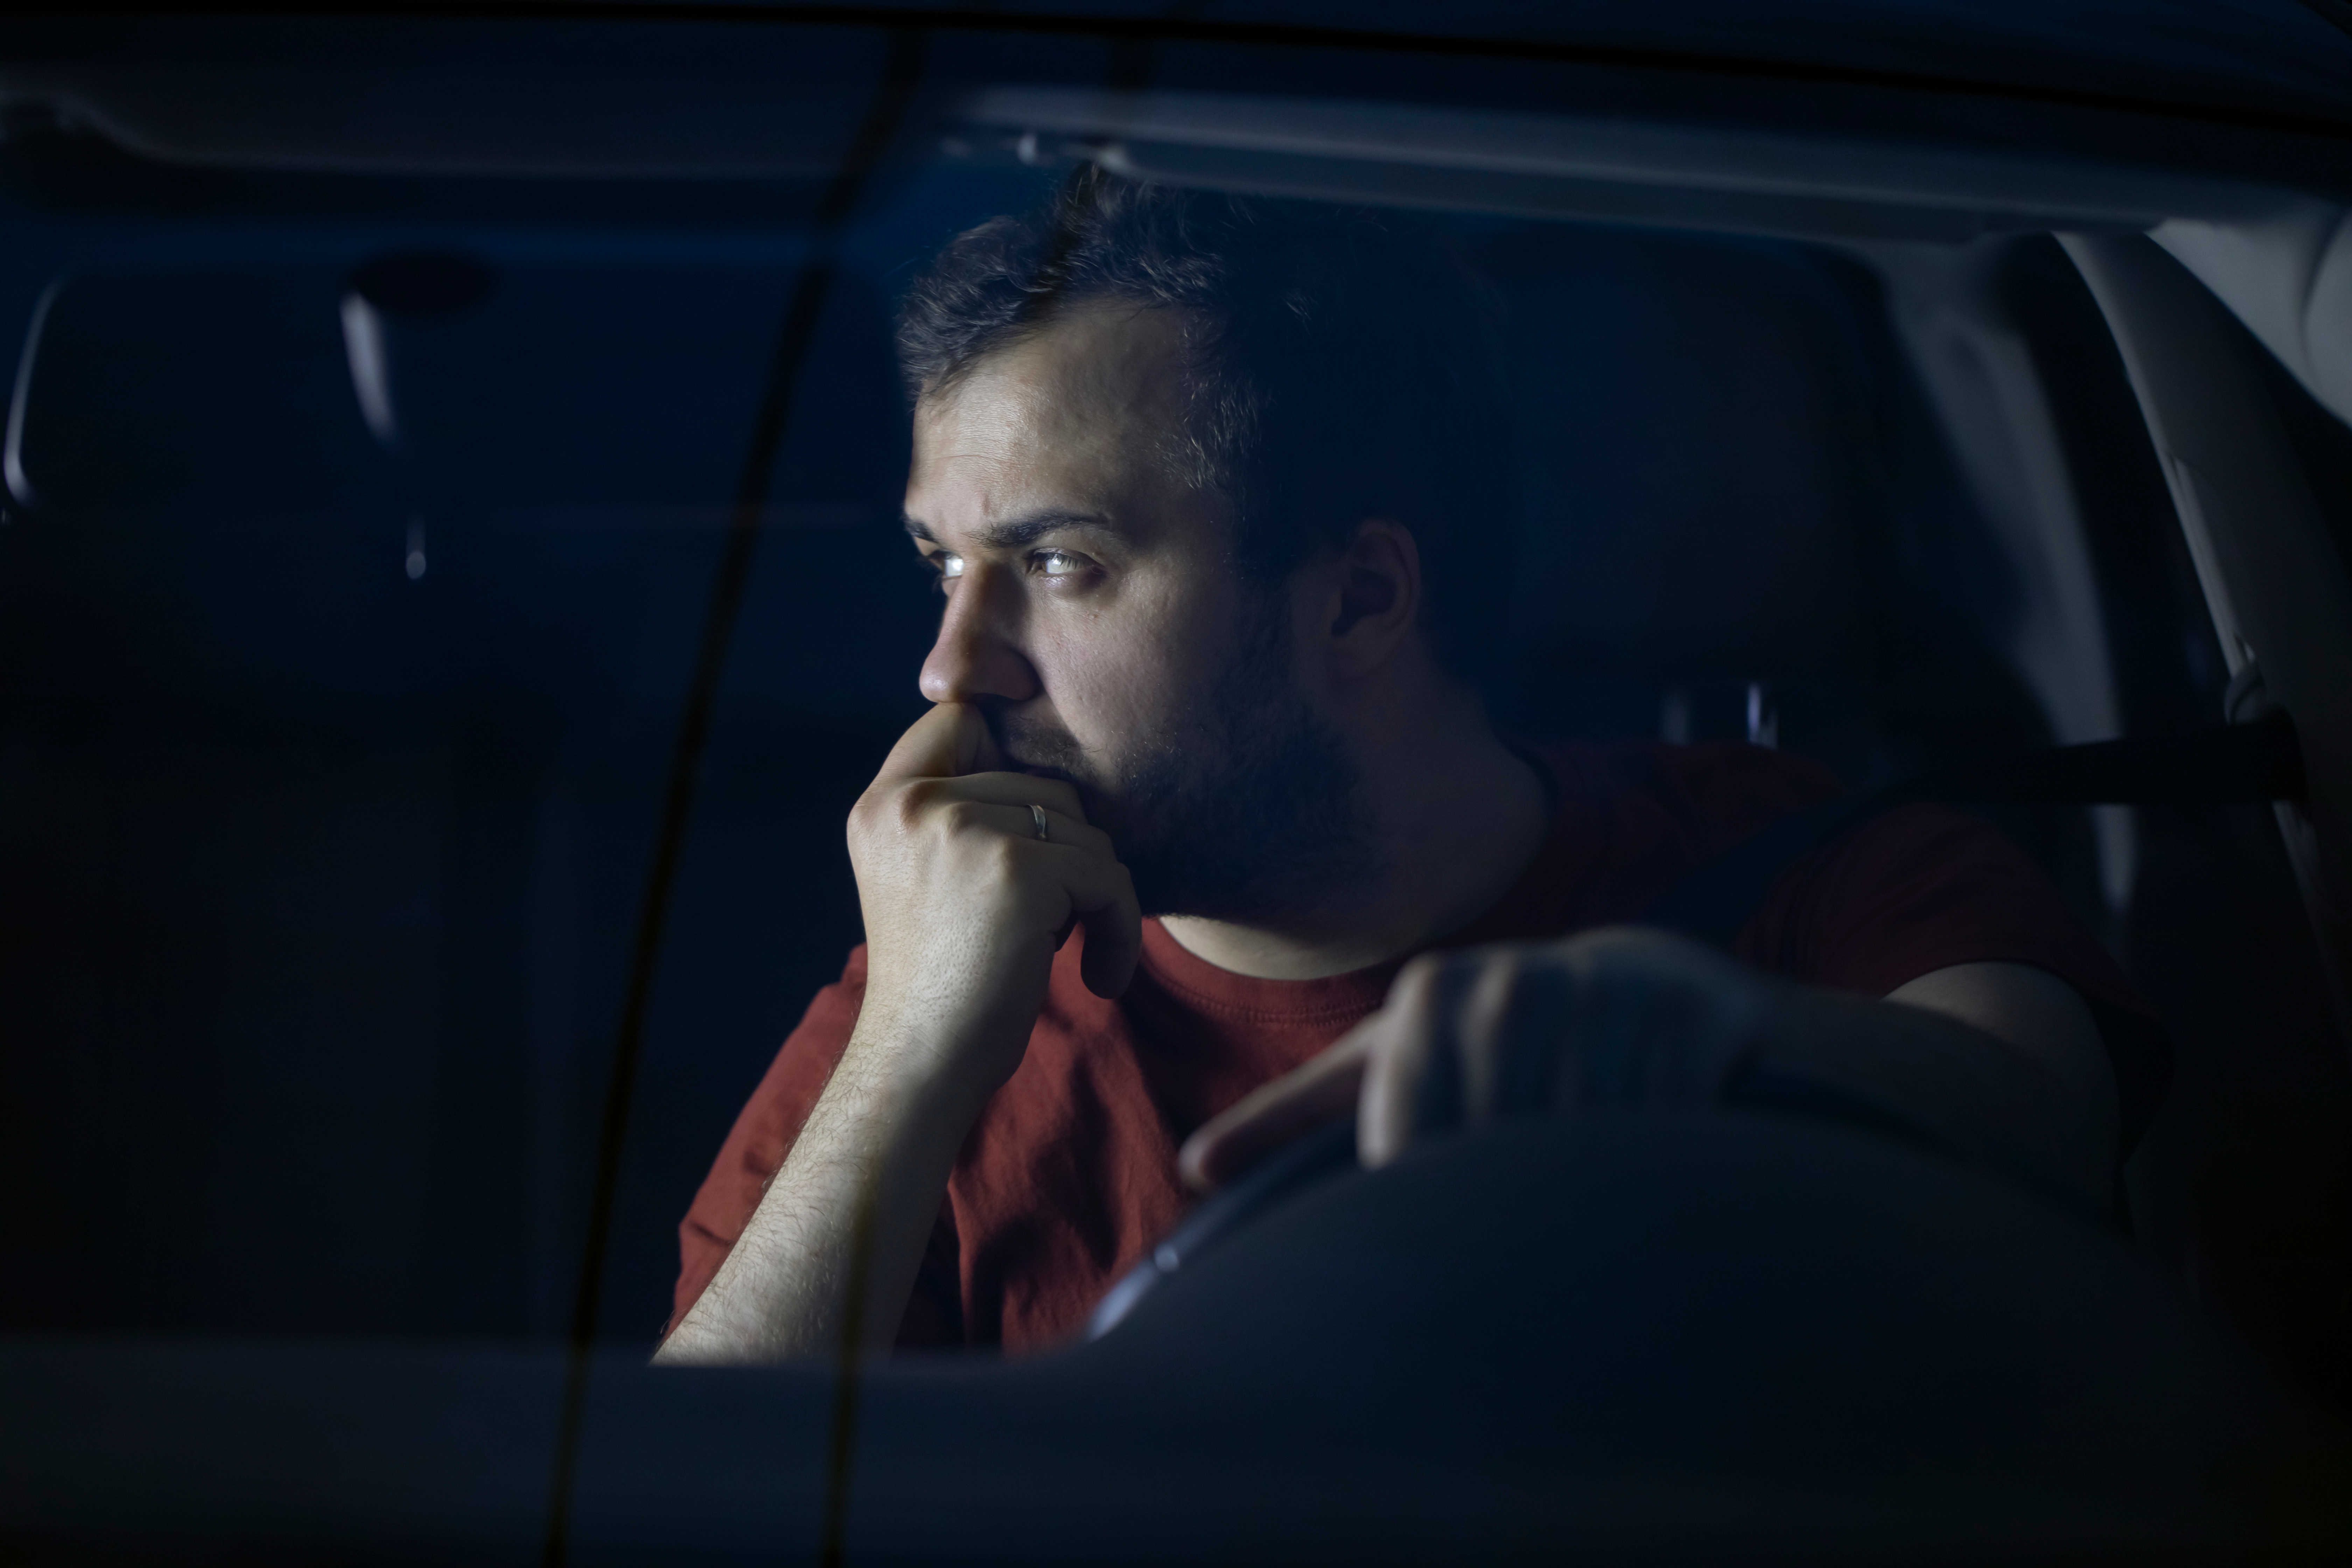 Hombre triste y deprimido pasando el tiempo solo en el Automóvil pensando en sus problemas sintiéndose solo. | Fuente: Shutterstock